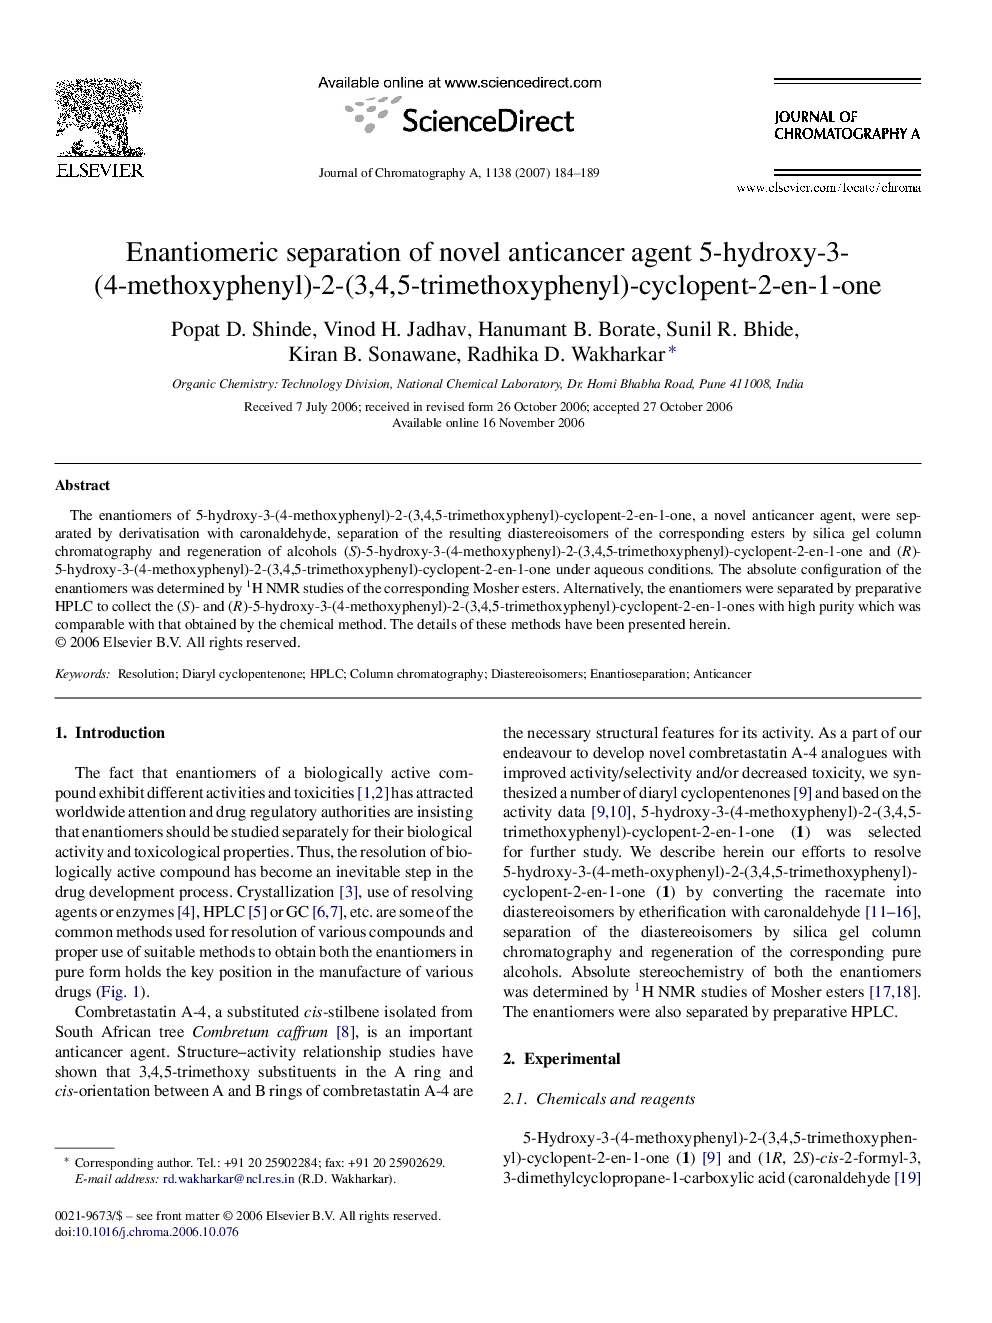 Enantiomeric separation of novel anticancer agent 5-hydroxy-3-(4-methoxyphenyl)-2-(3,4,5-trimethoxyphenyl)-cyclopent-2-en-1-one